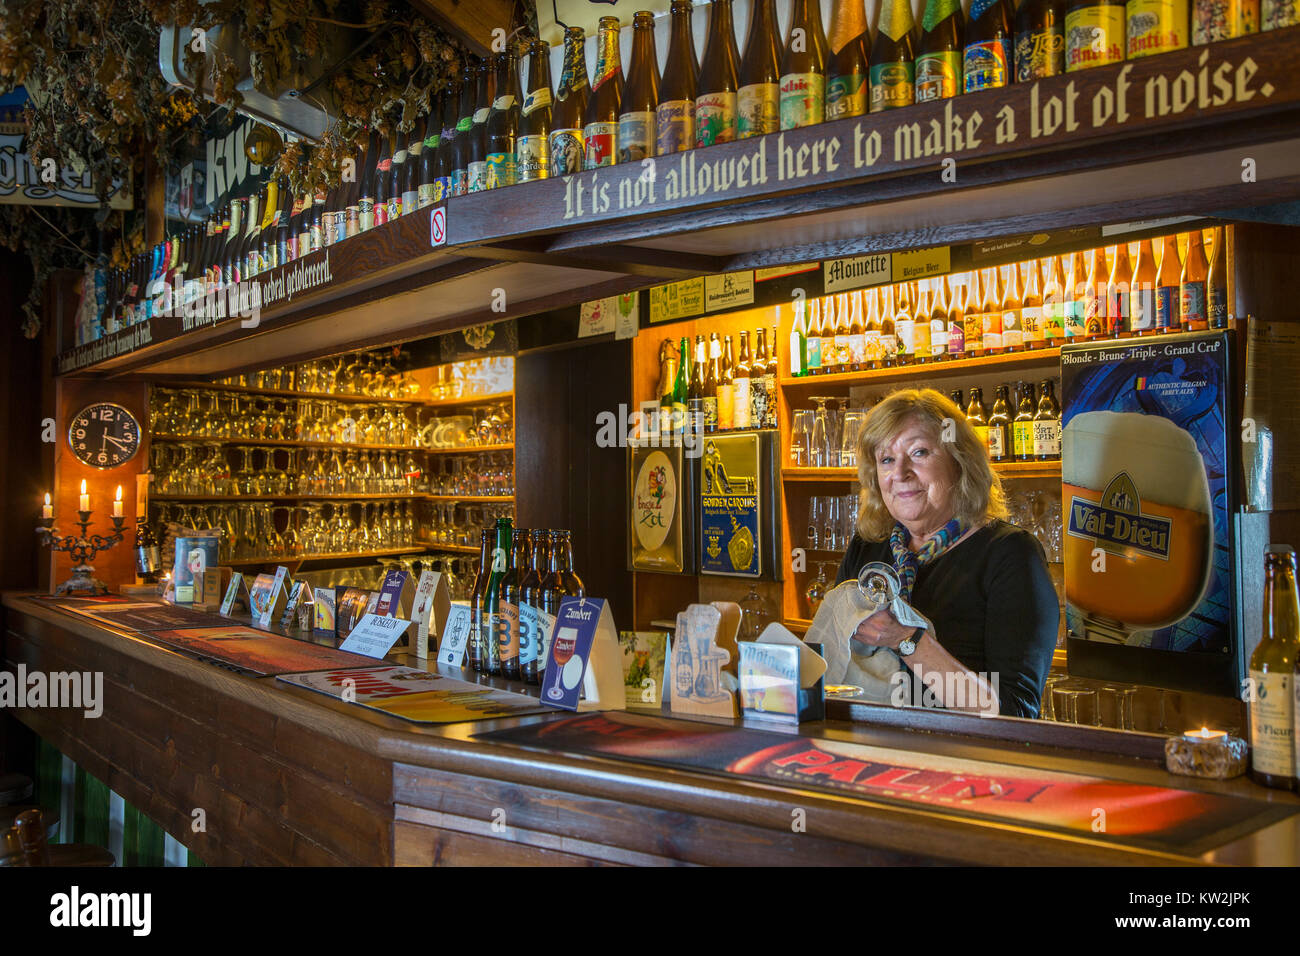 Barista dietro il bancone bar nella taverna Kroegske, belga caffetteria-ristorante nel villaggio Emelgem, Izegem, Fiandre Occidentali, Belgio Foto Stock